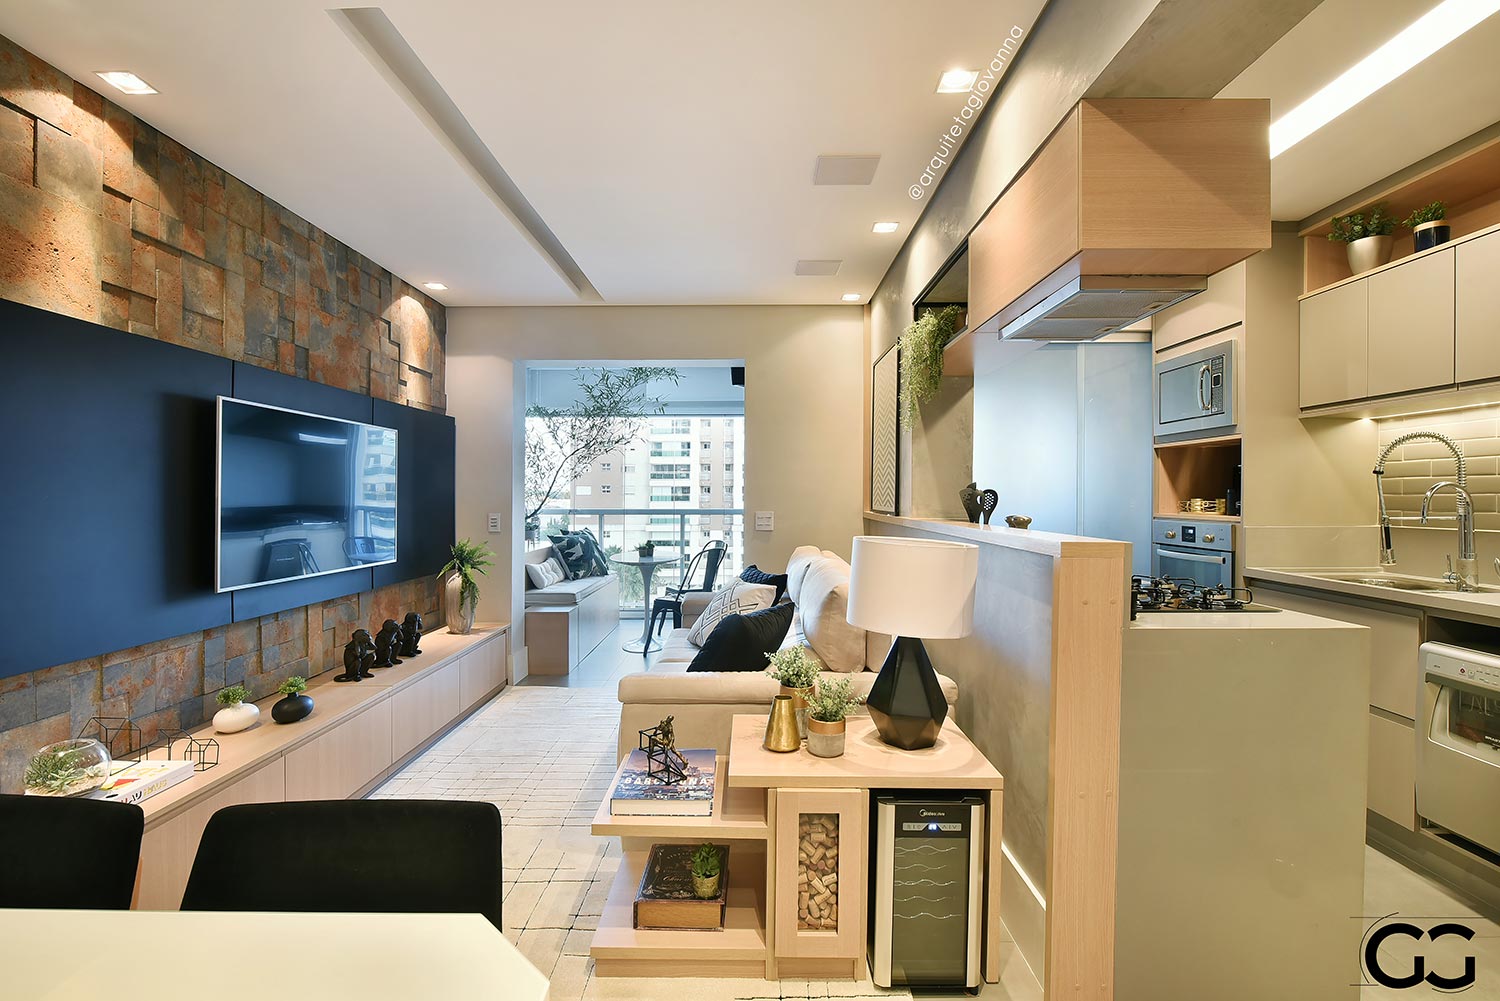 Ambiente compartilhado sala e cozinha com vista para sacada.